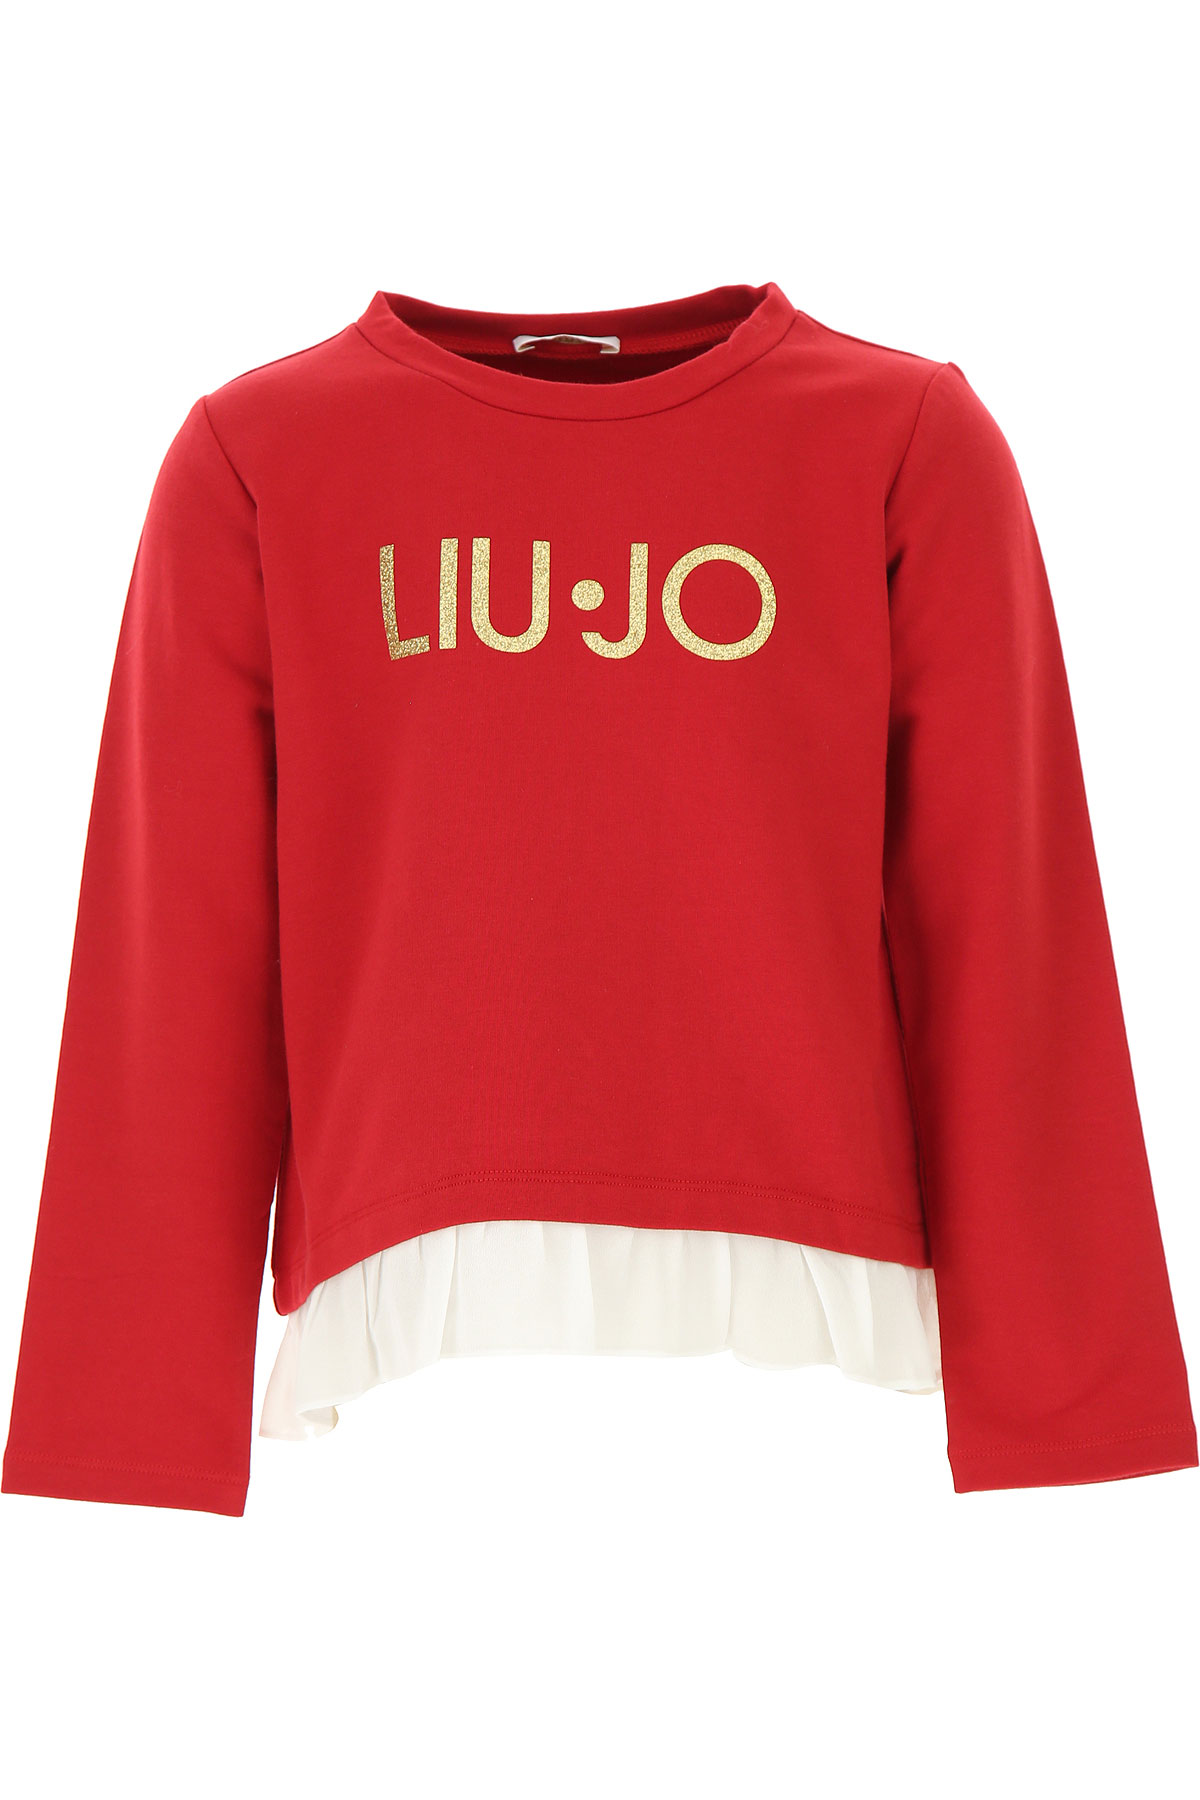 Liu Jo Kinder Sweatshirt & Kapuzenpullover für Mädchen Günstig im Sale, Rot, Baumwolle, 2017, 2Y 3Y 5Y 7Y